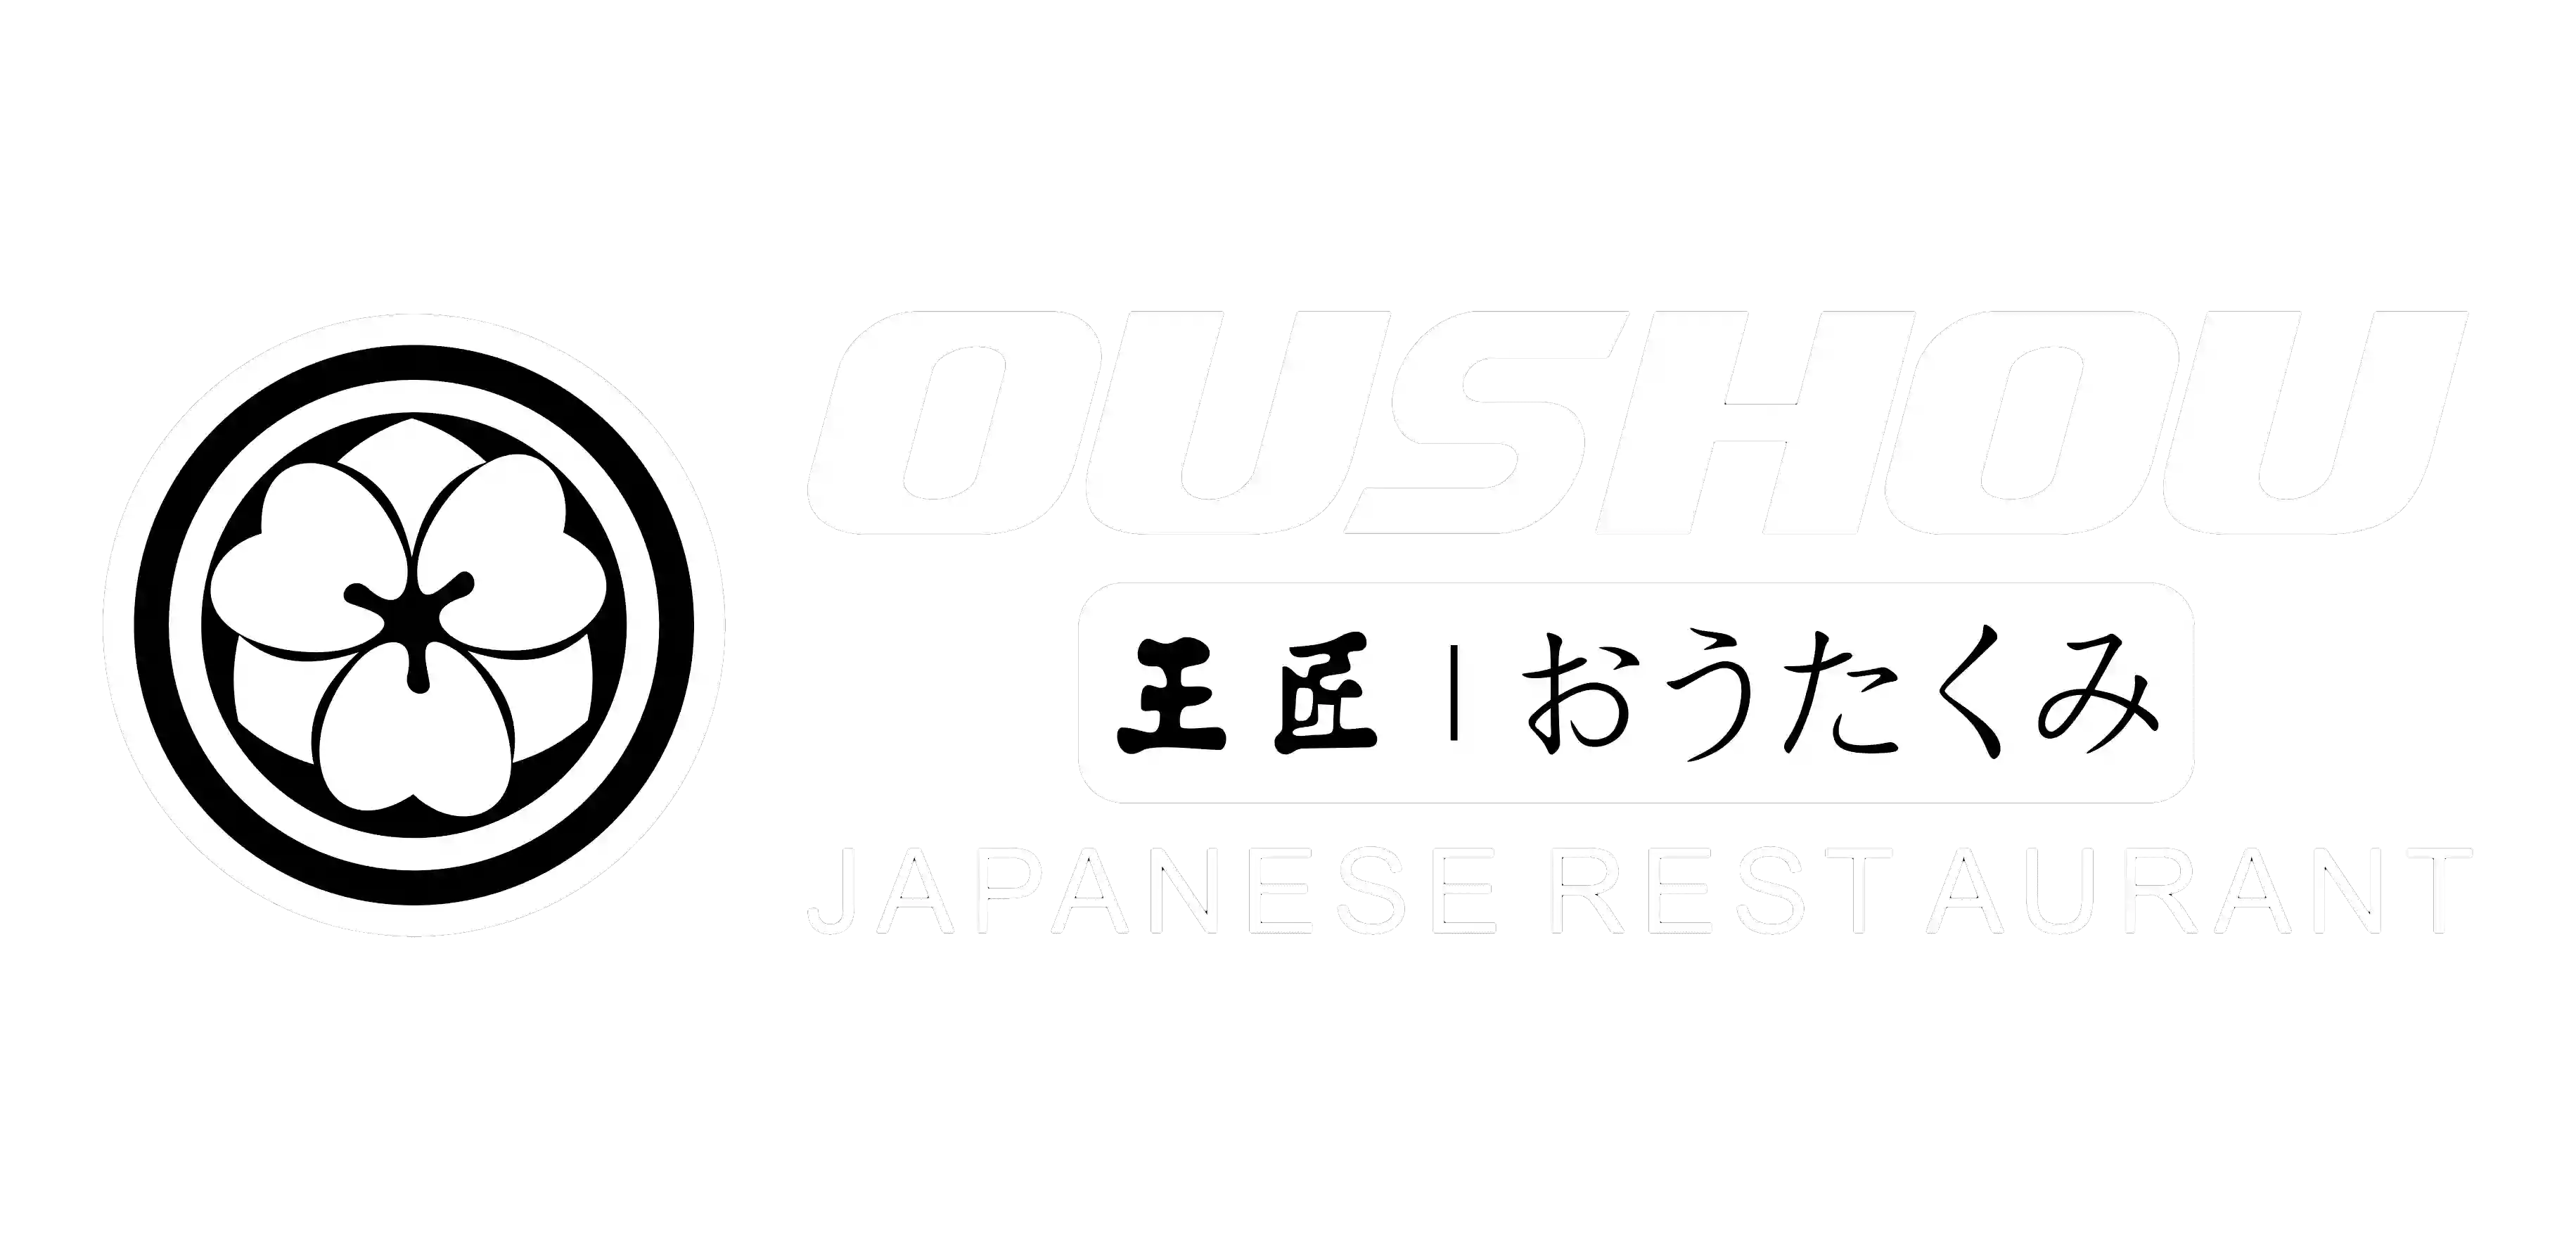 Oushou （Hawthorn East）Japanese Restaurant, Sushi, Sashimi, Sake